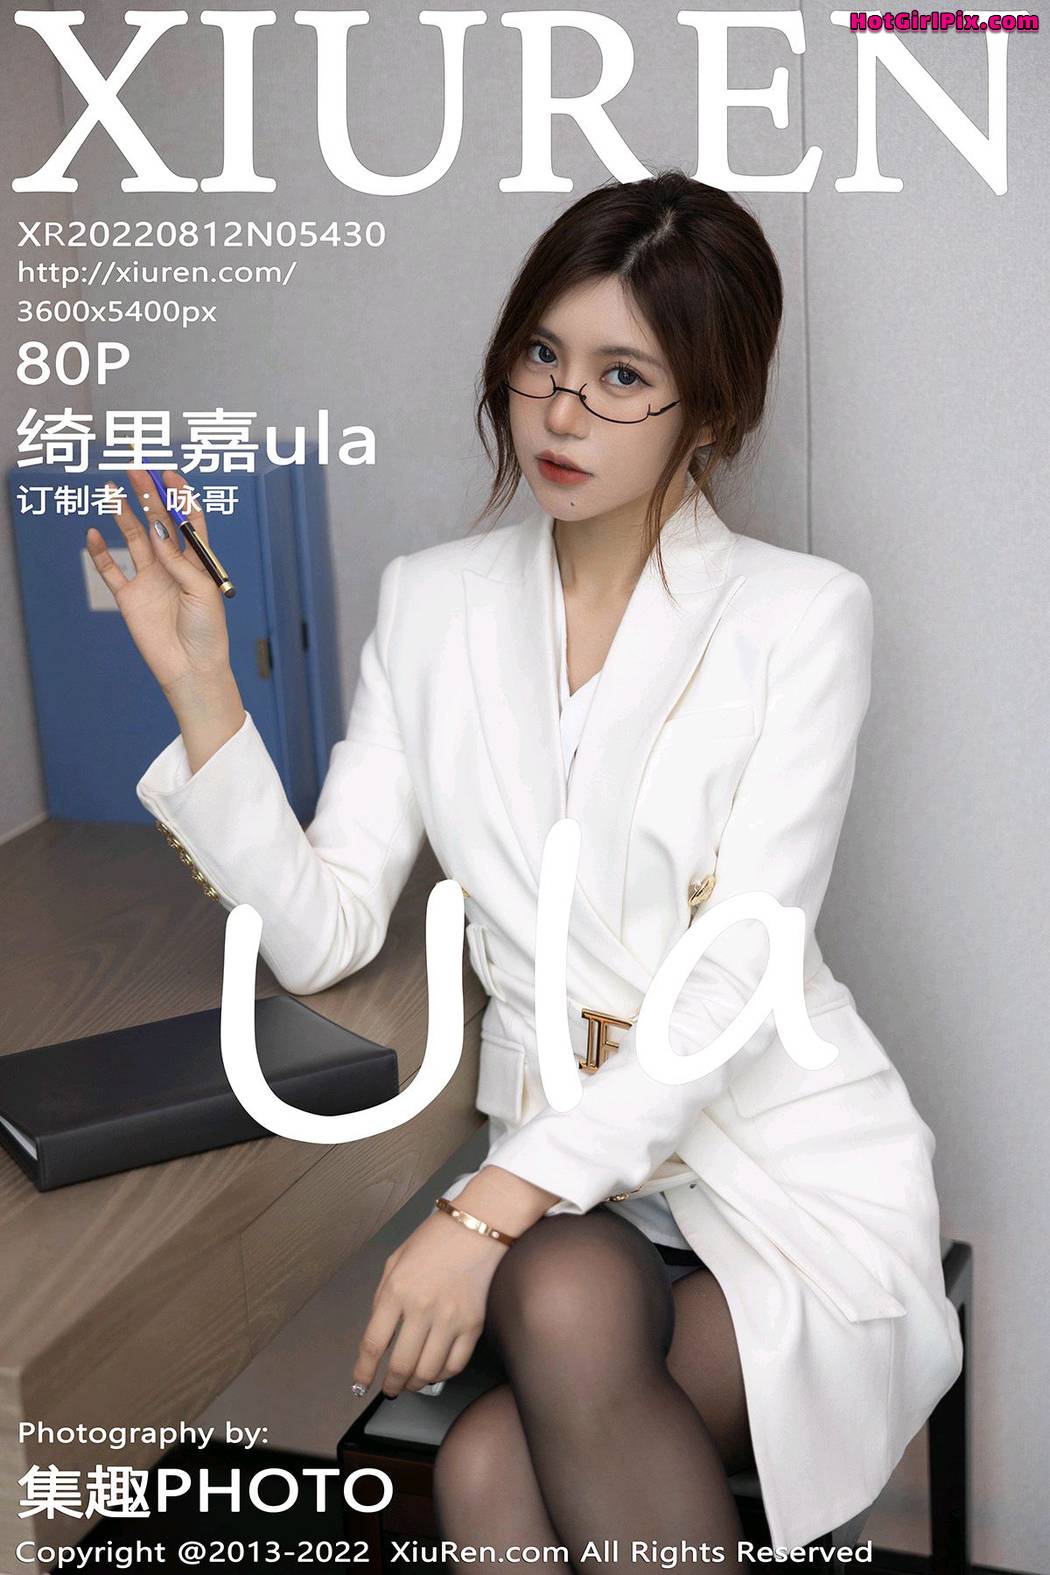 [XIUREN] No.5430 Qi Li Jia 绮里嘉ula Cover Photo